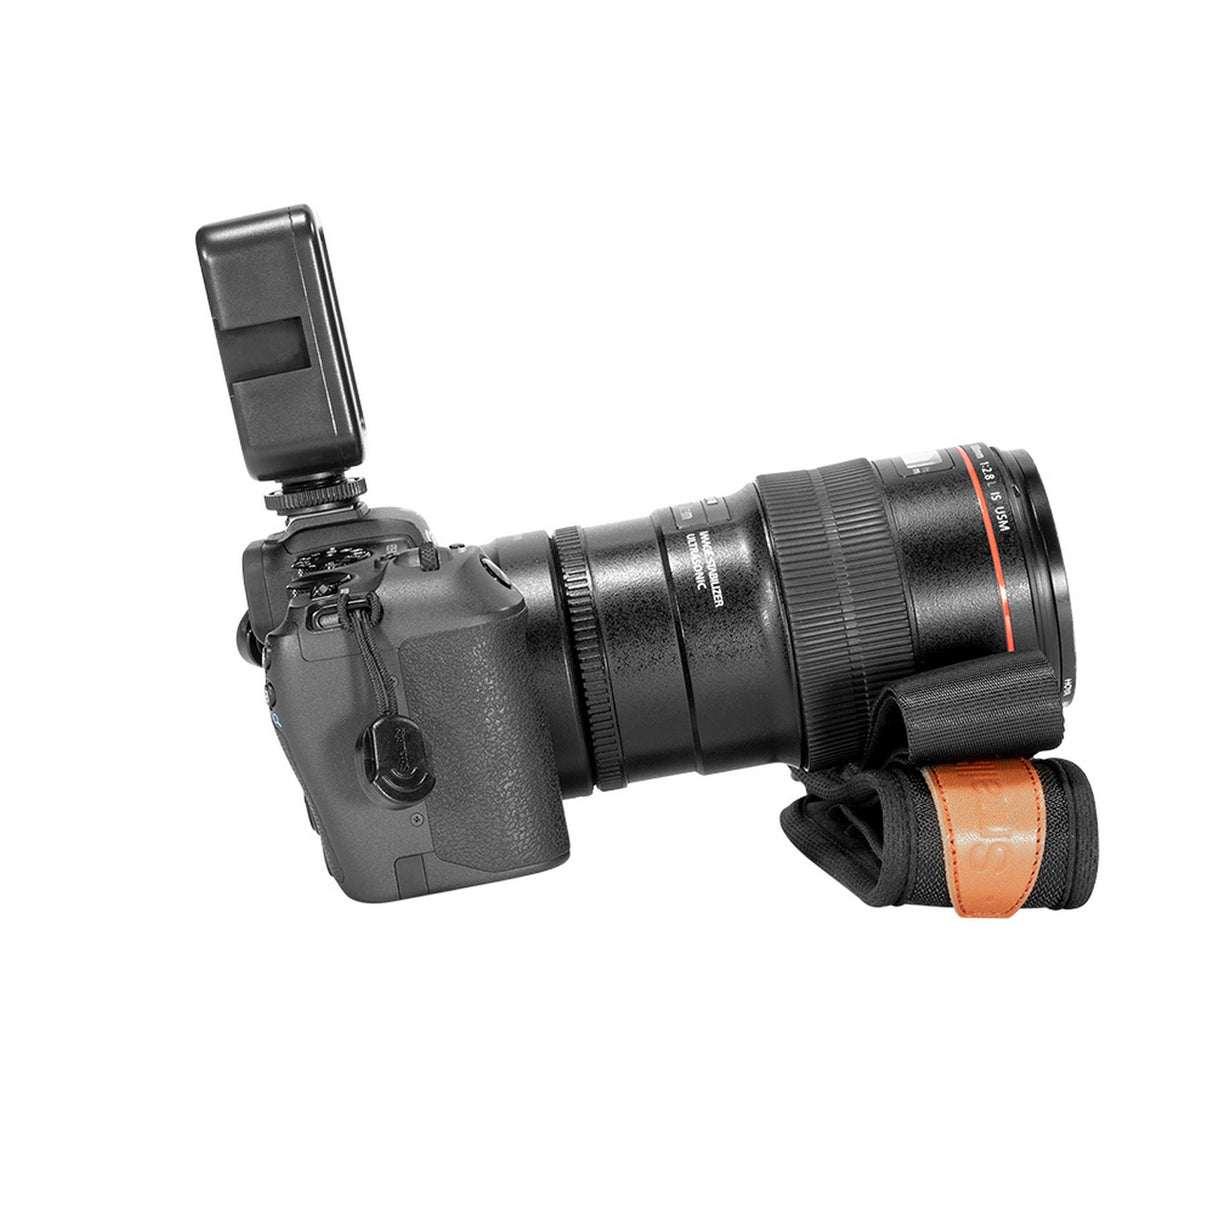 SmallRig PSC2428 Universal Camera Shoulder Strap for DSLR Cameras